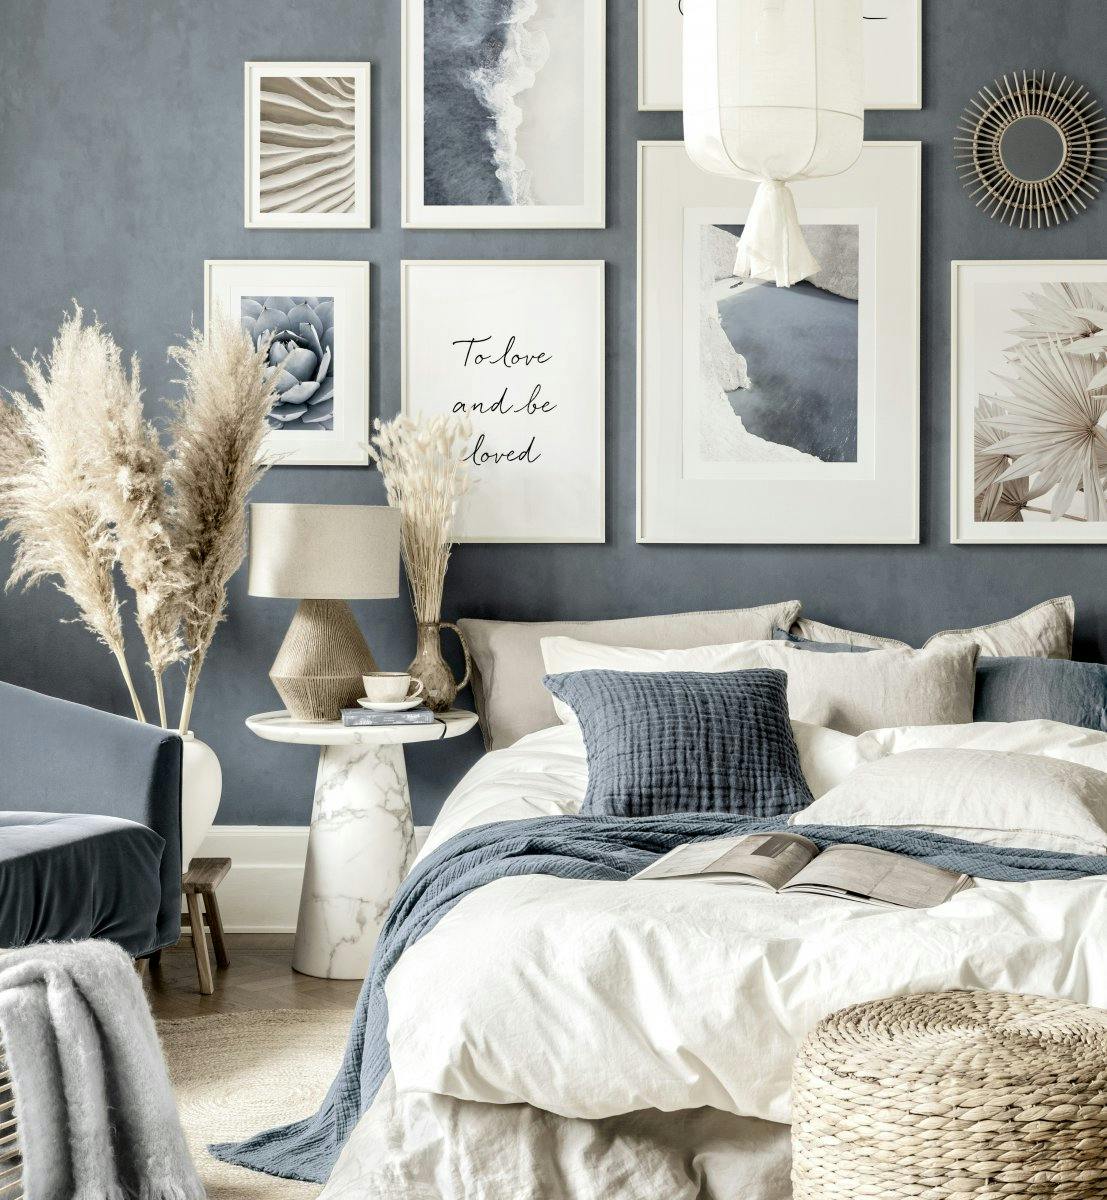 Niebiesko-bezowa galeria obrazow niebieska sypialnia biale drewniane ramki